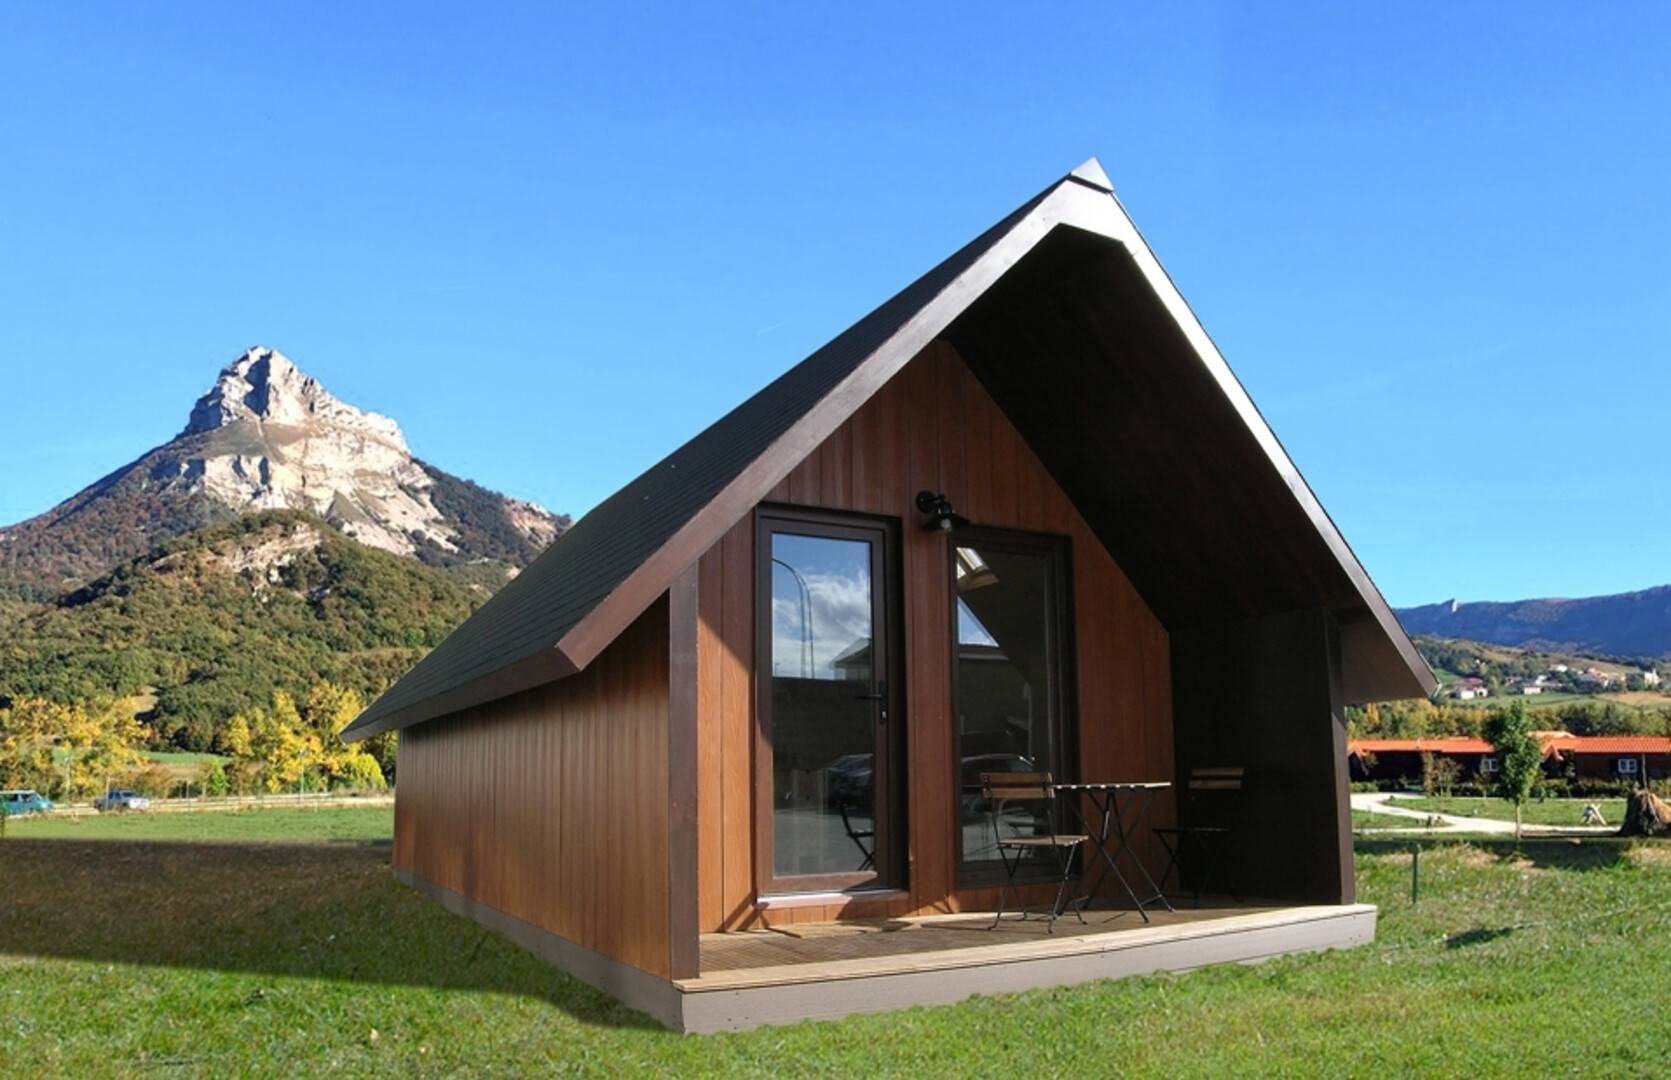 Maison en bois dans un éco-camping avec le Mont Beriain en arrière-plan